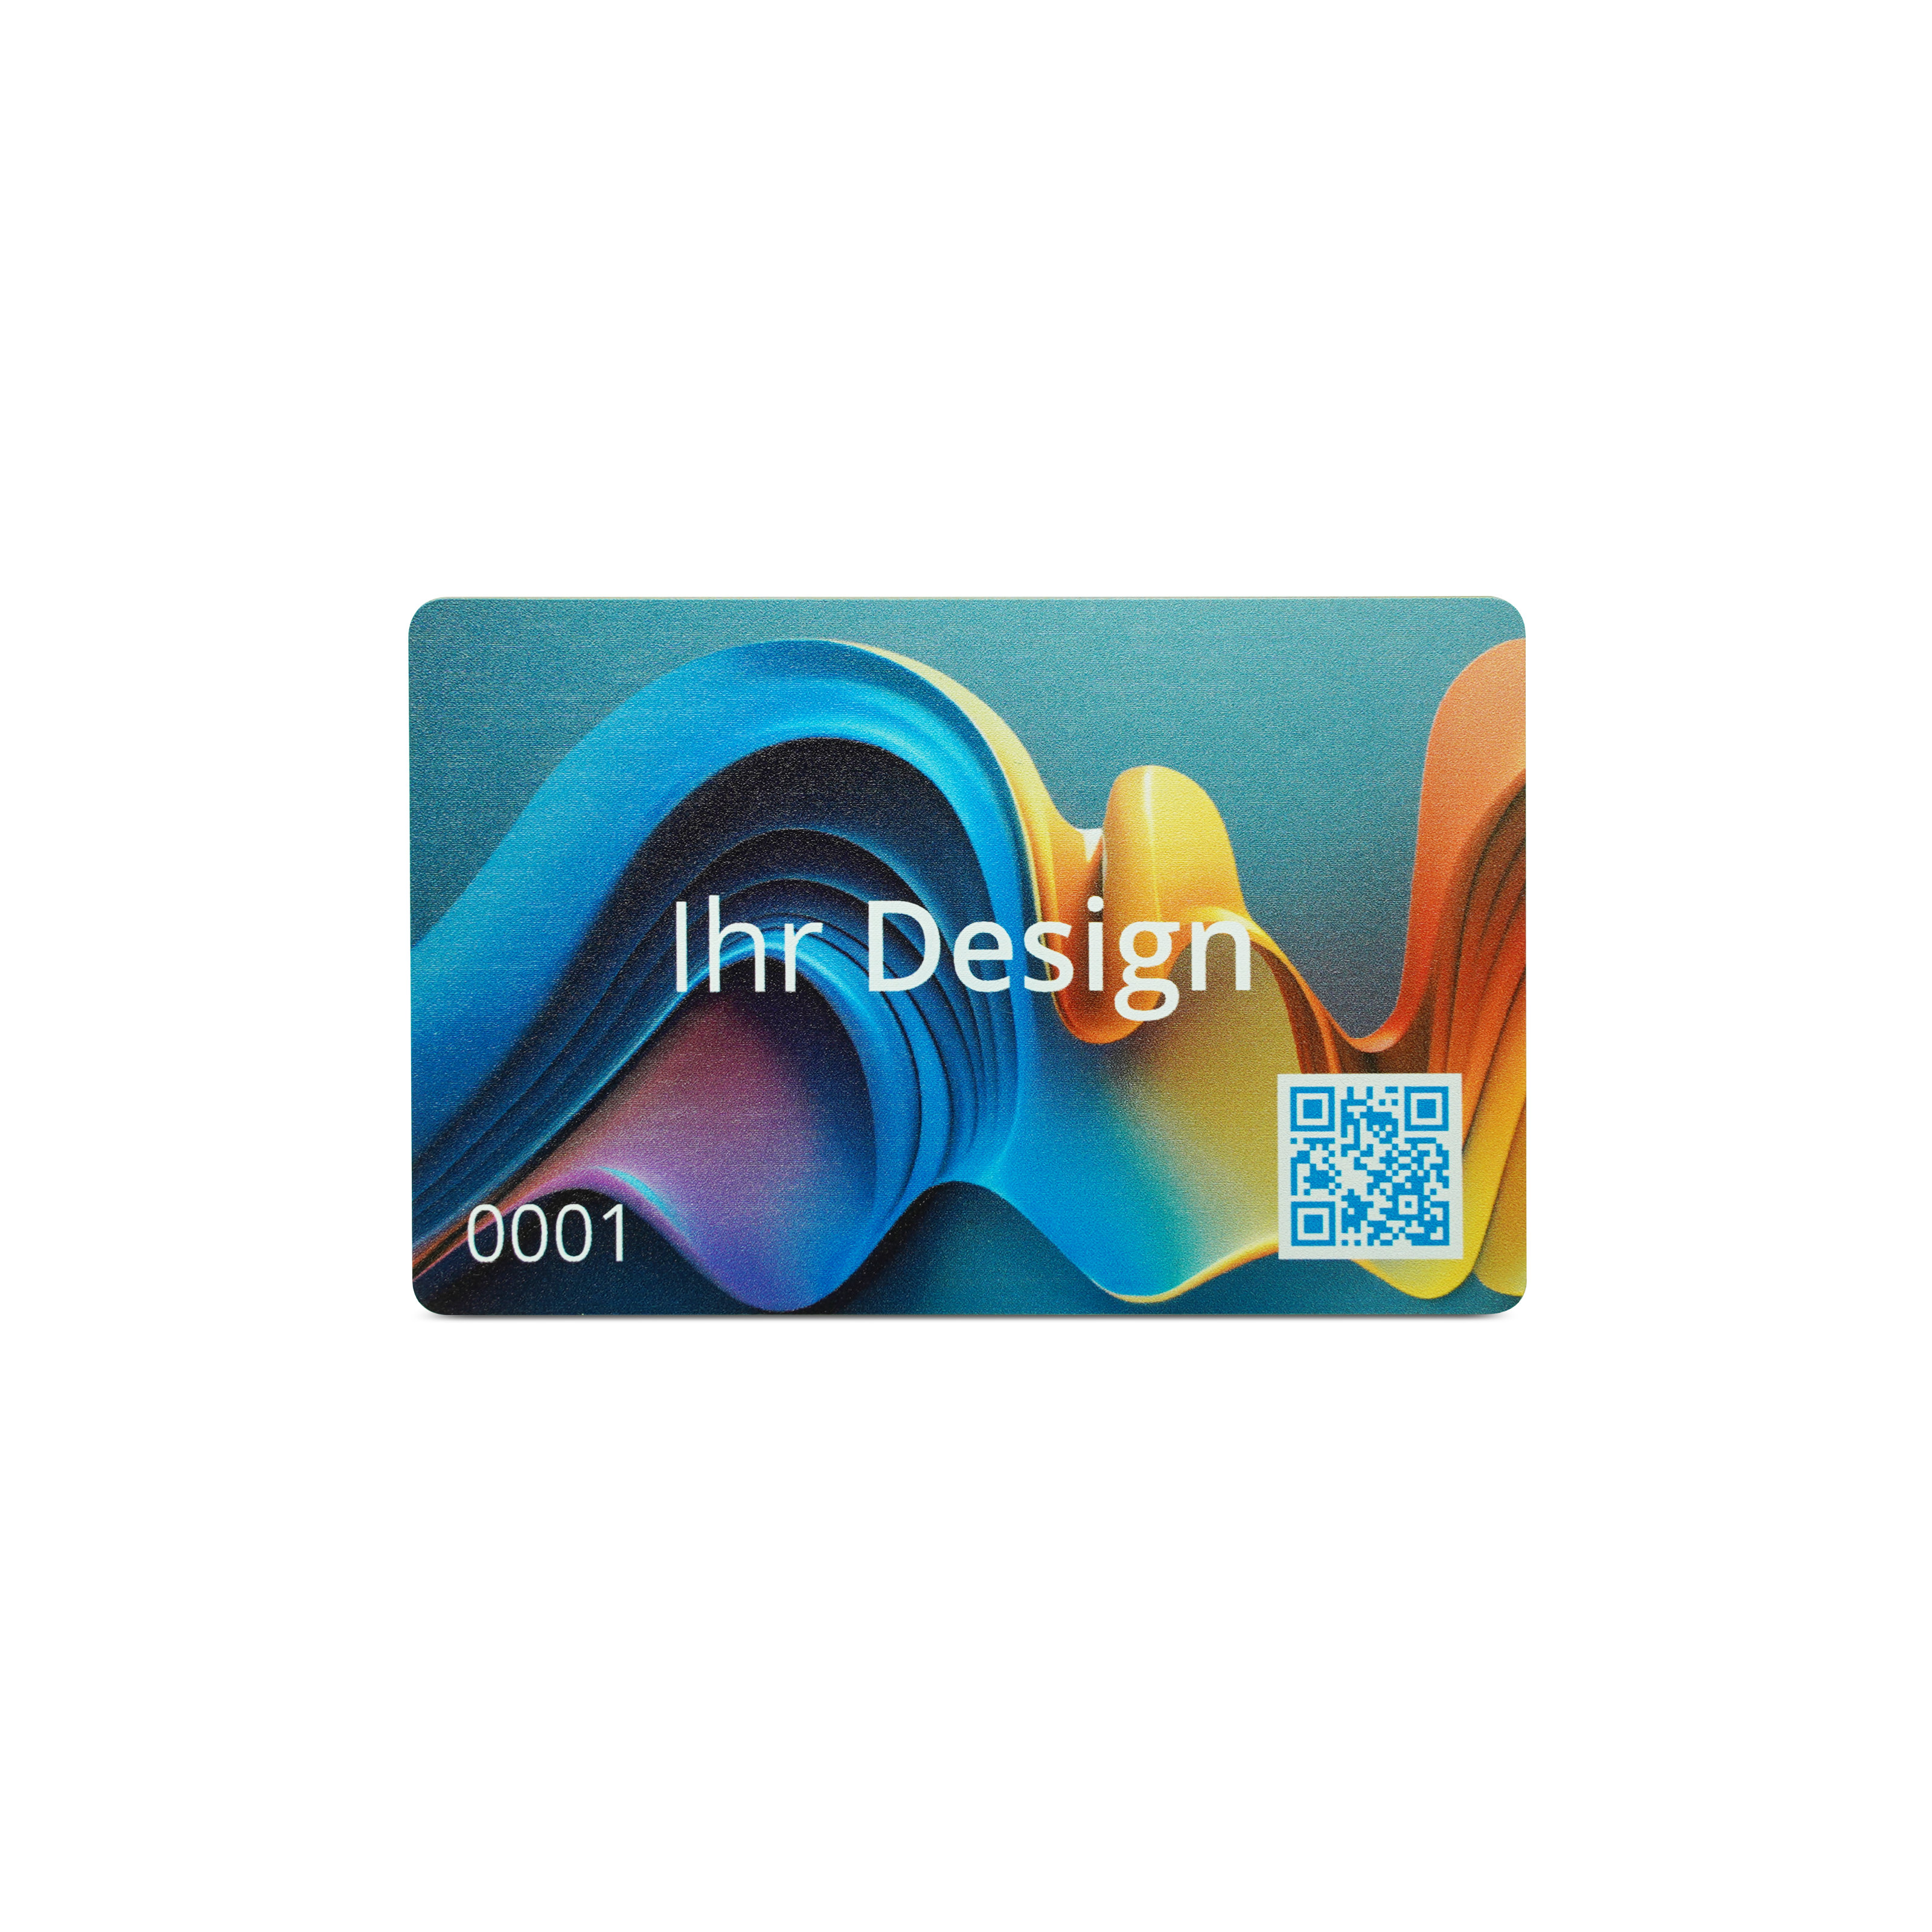 NFC Karte Metall/PVC - 85,6 x 54 mm - NTAG213 - 180 Byte - gold matt - bedruckt